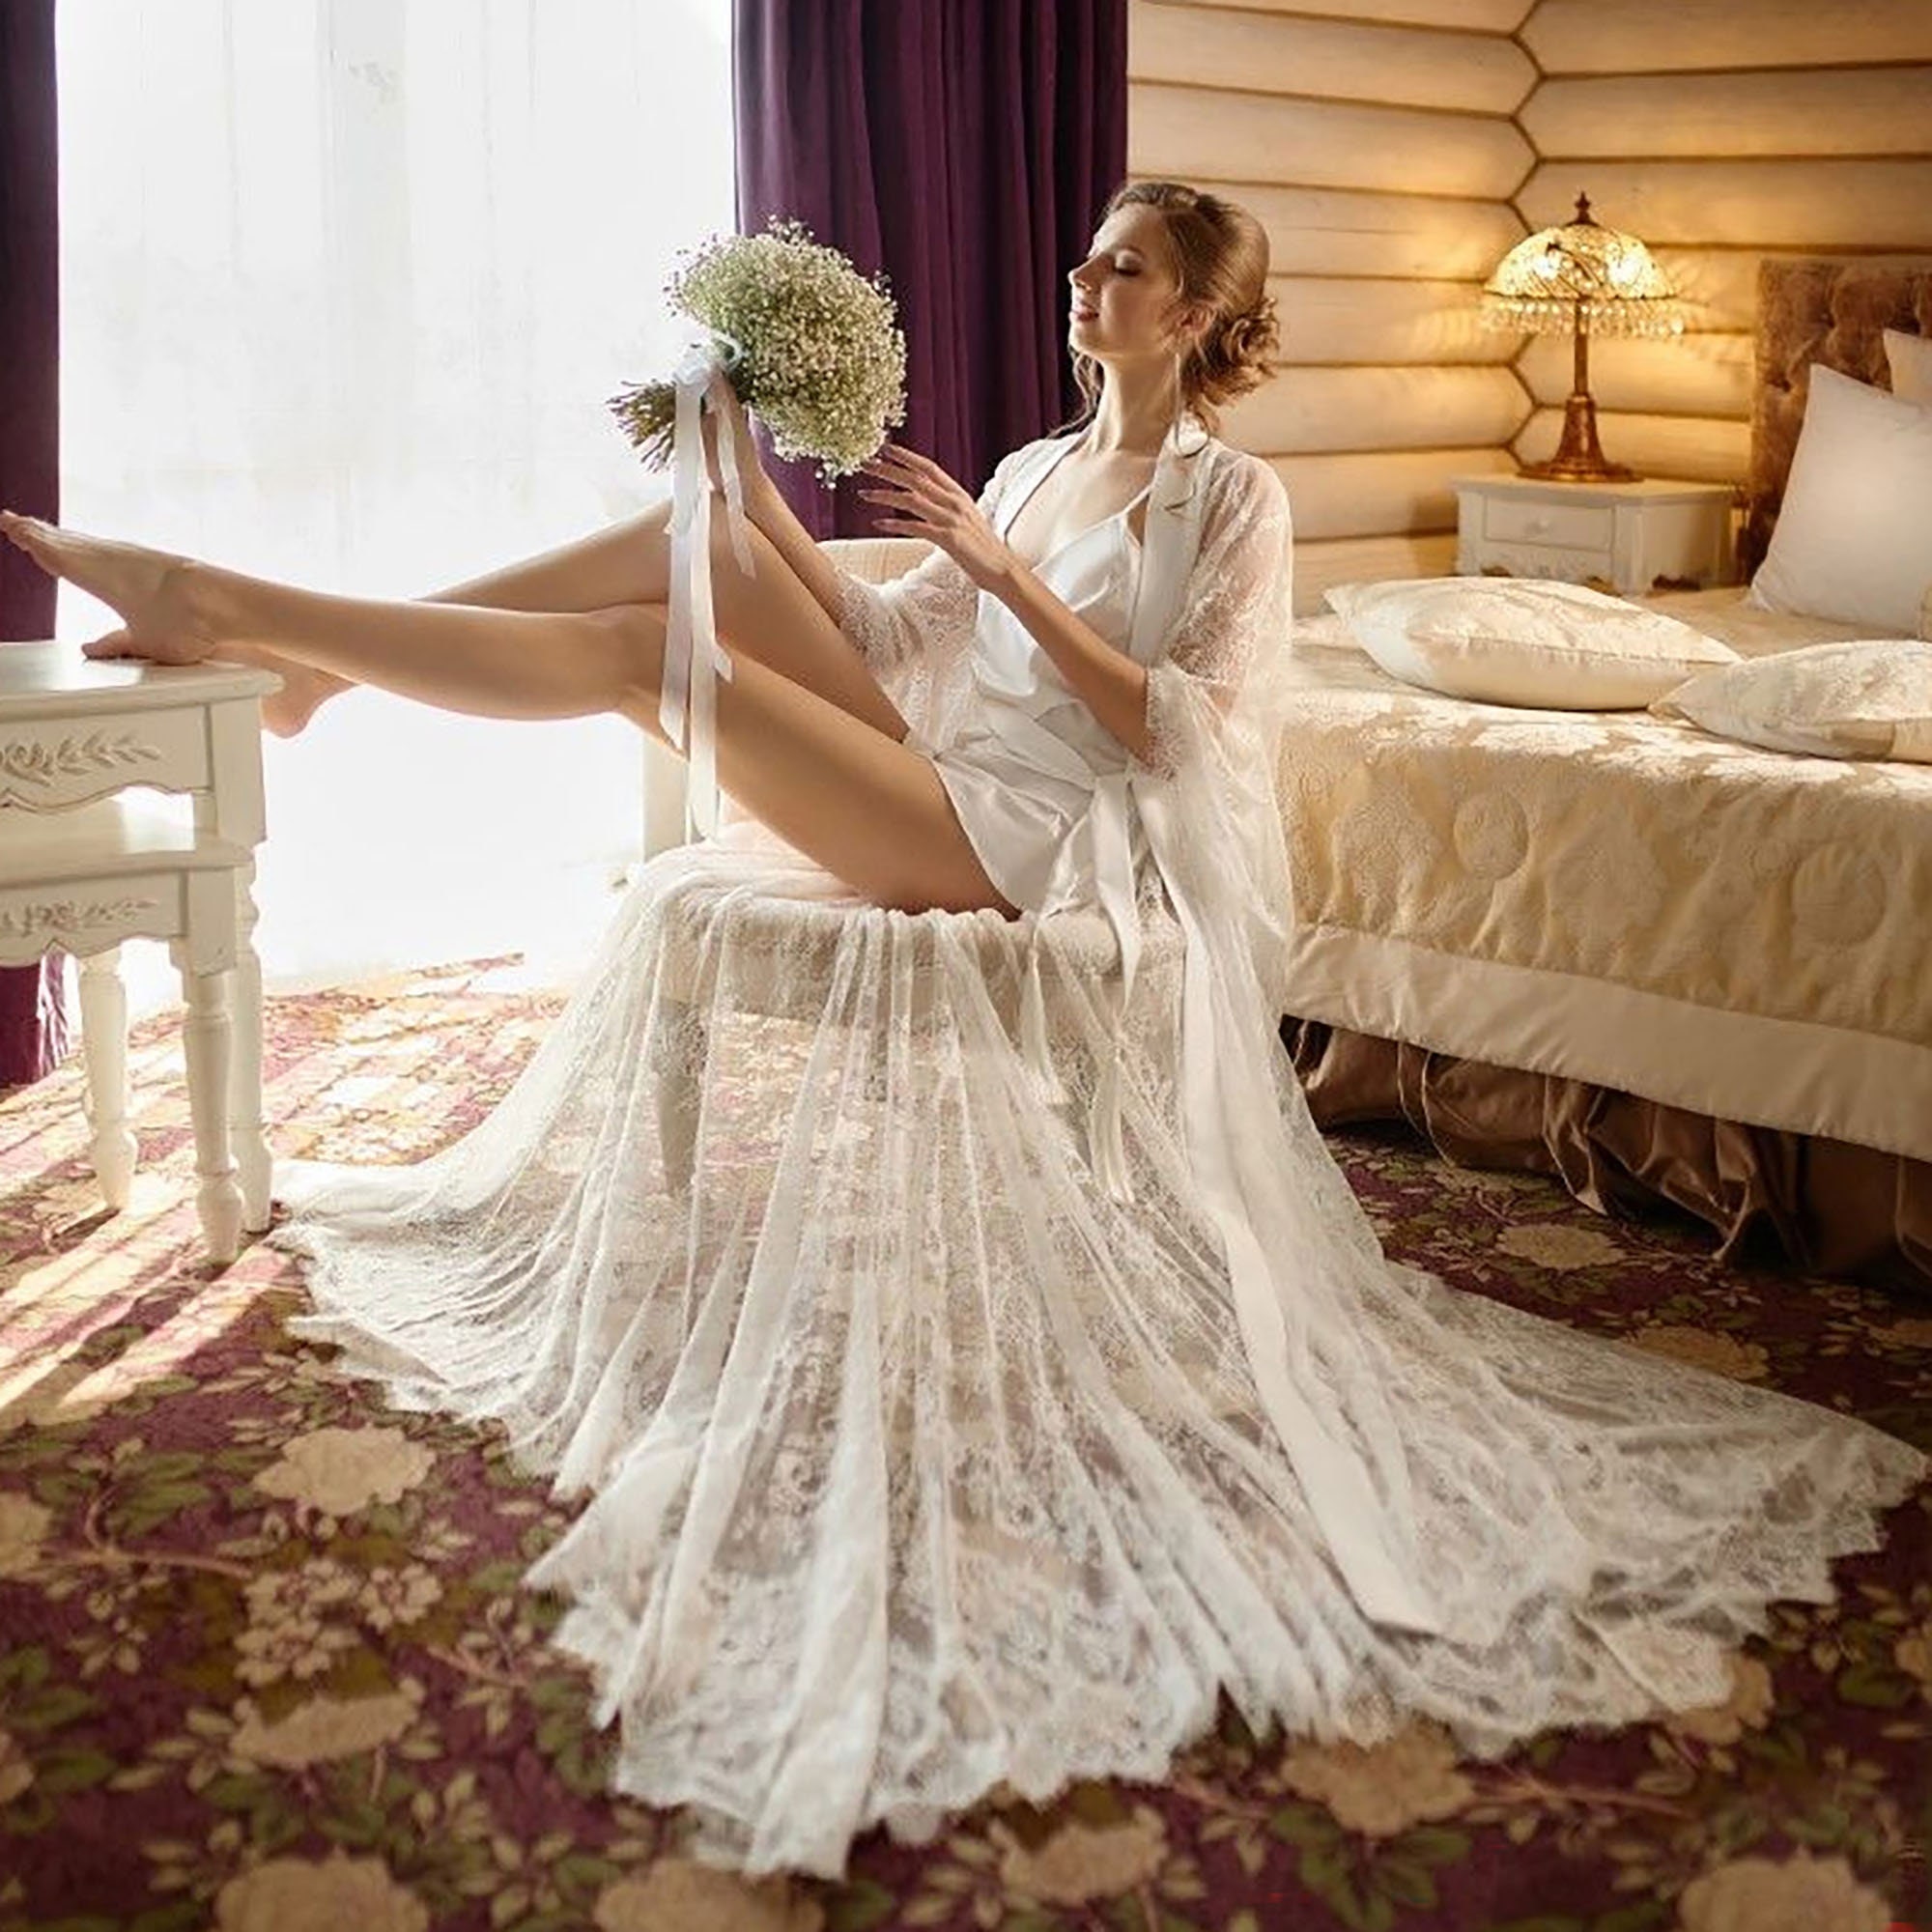 Rush Order Bridesmaid Robes/ Bridal Robes/ Wedding Robes/ Lace Robes/ Bridesmaid  Gifts/ Bridal Party Robes/personalized Bridesmaid Robes 